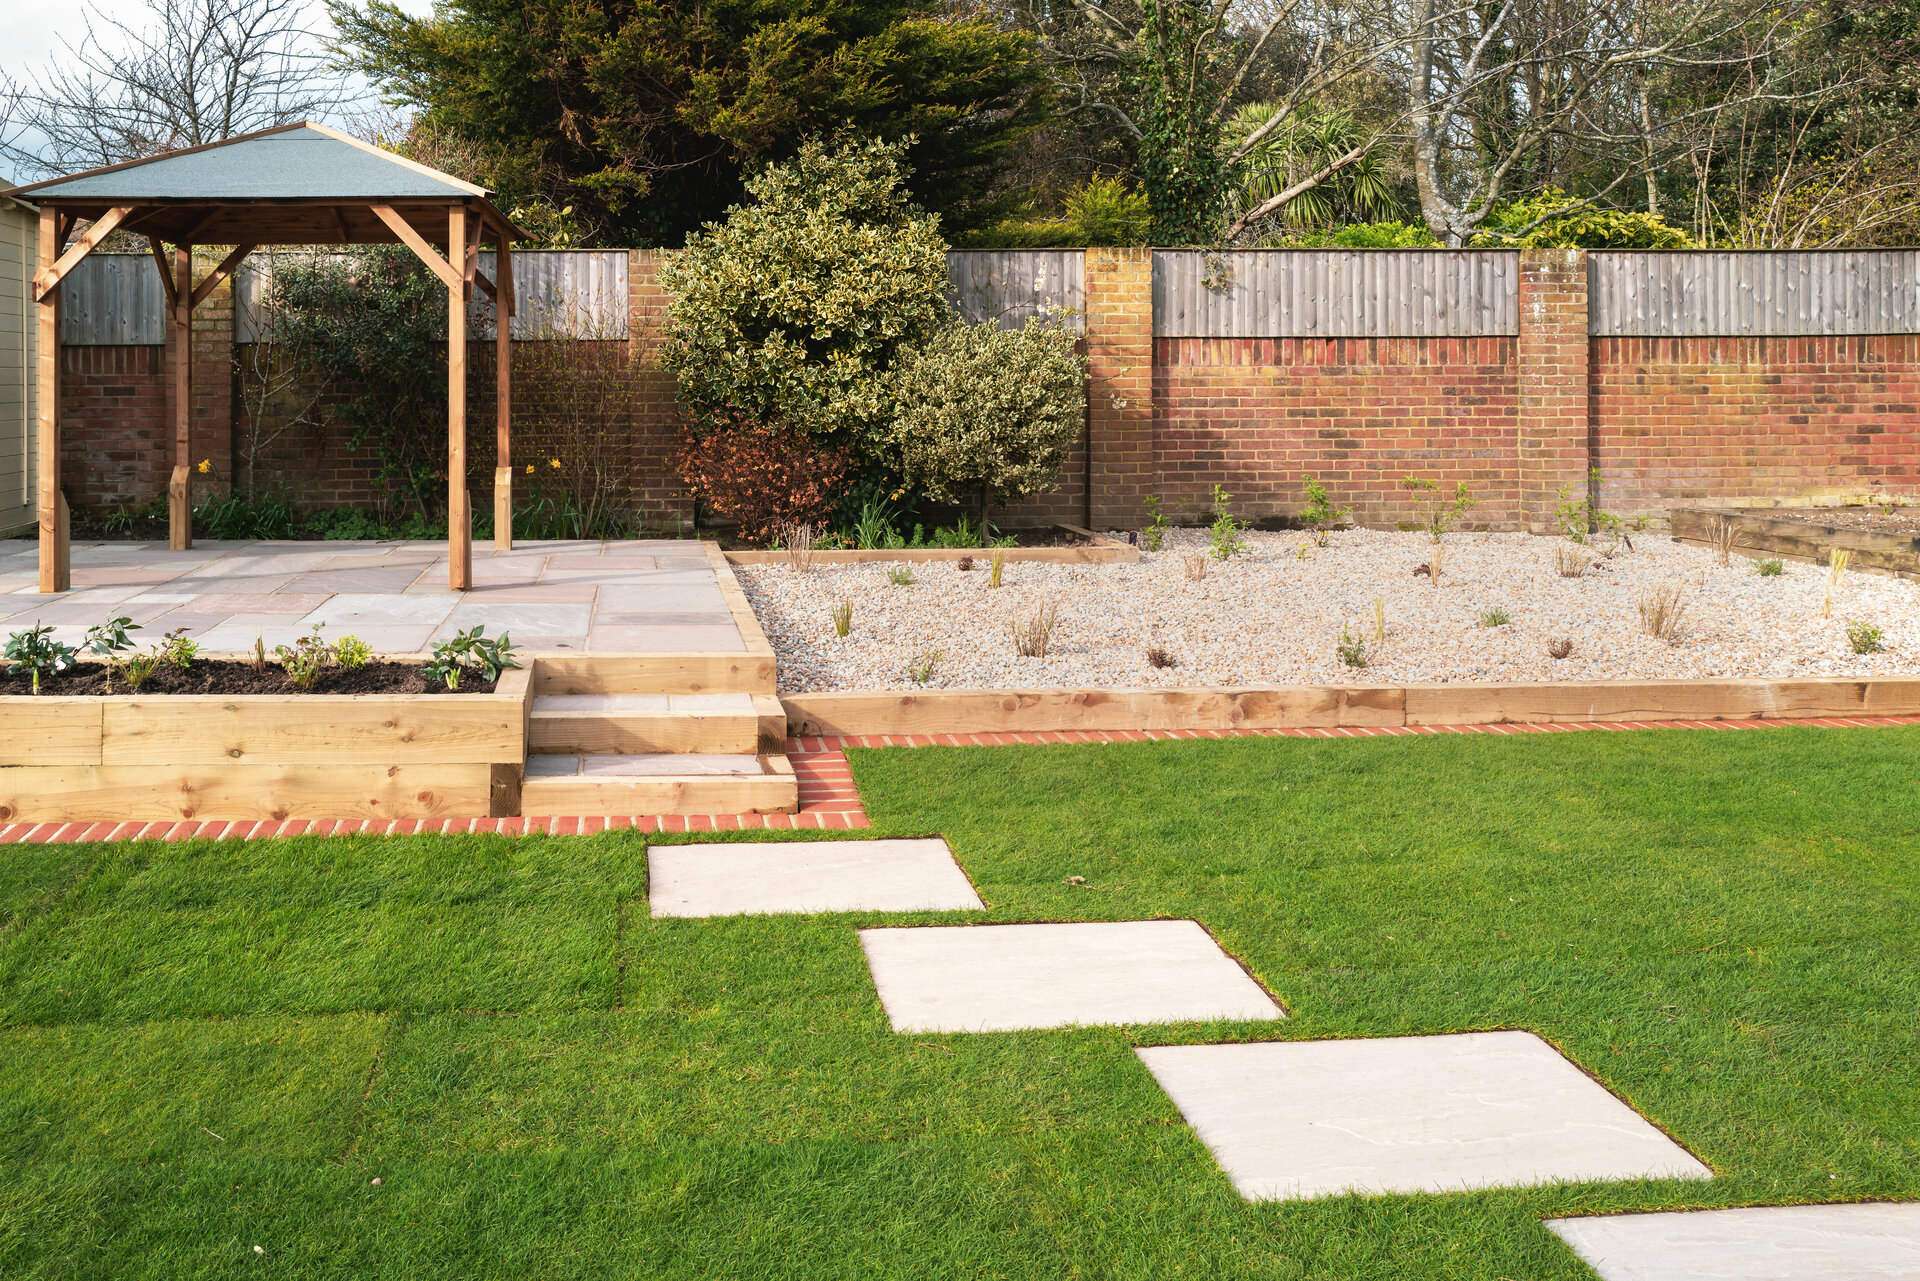 Trittsteine und Stufen aus Natursteinplatten führen zu erhöhten Terrasse im Garten.